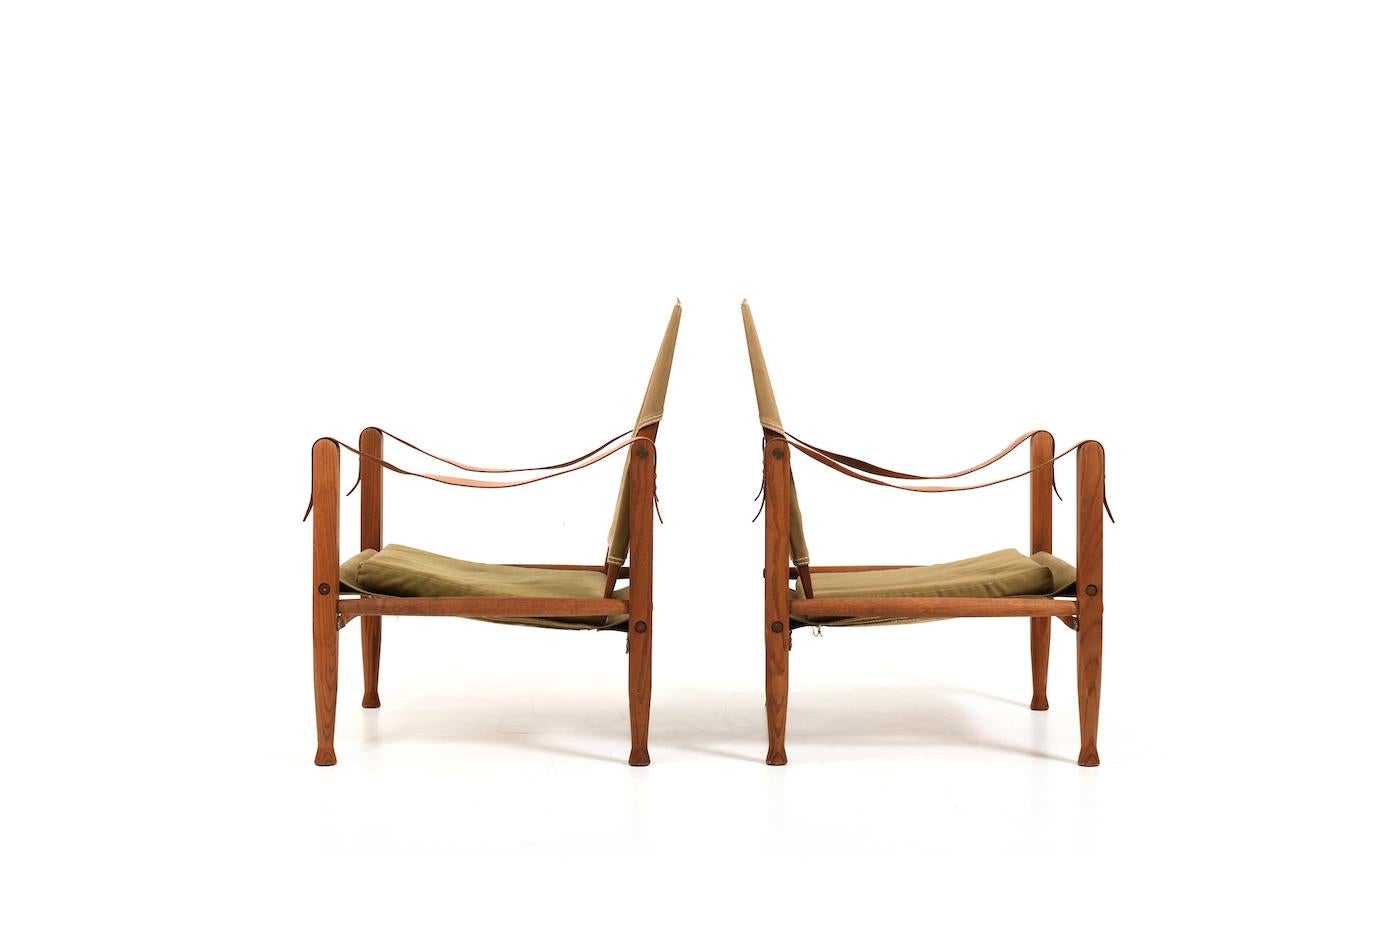 Ein Paar alte Safari-Stühle von Kaare Klint für Rud. Rasmussen Dänemark. Entworfen 1933, hergestellt in den. 1960s. Hergestellt aus massiver Eiche oder Esche. Mit originalen Lederarmlehnen, grünem Leinenstoff und Kissen. Unberührbarer Zustand, mit